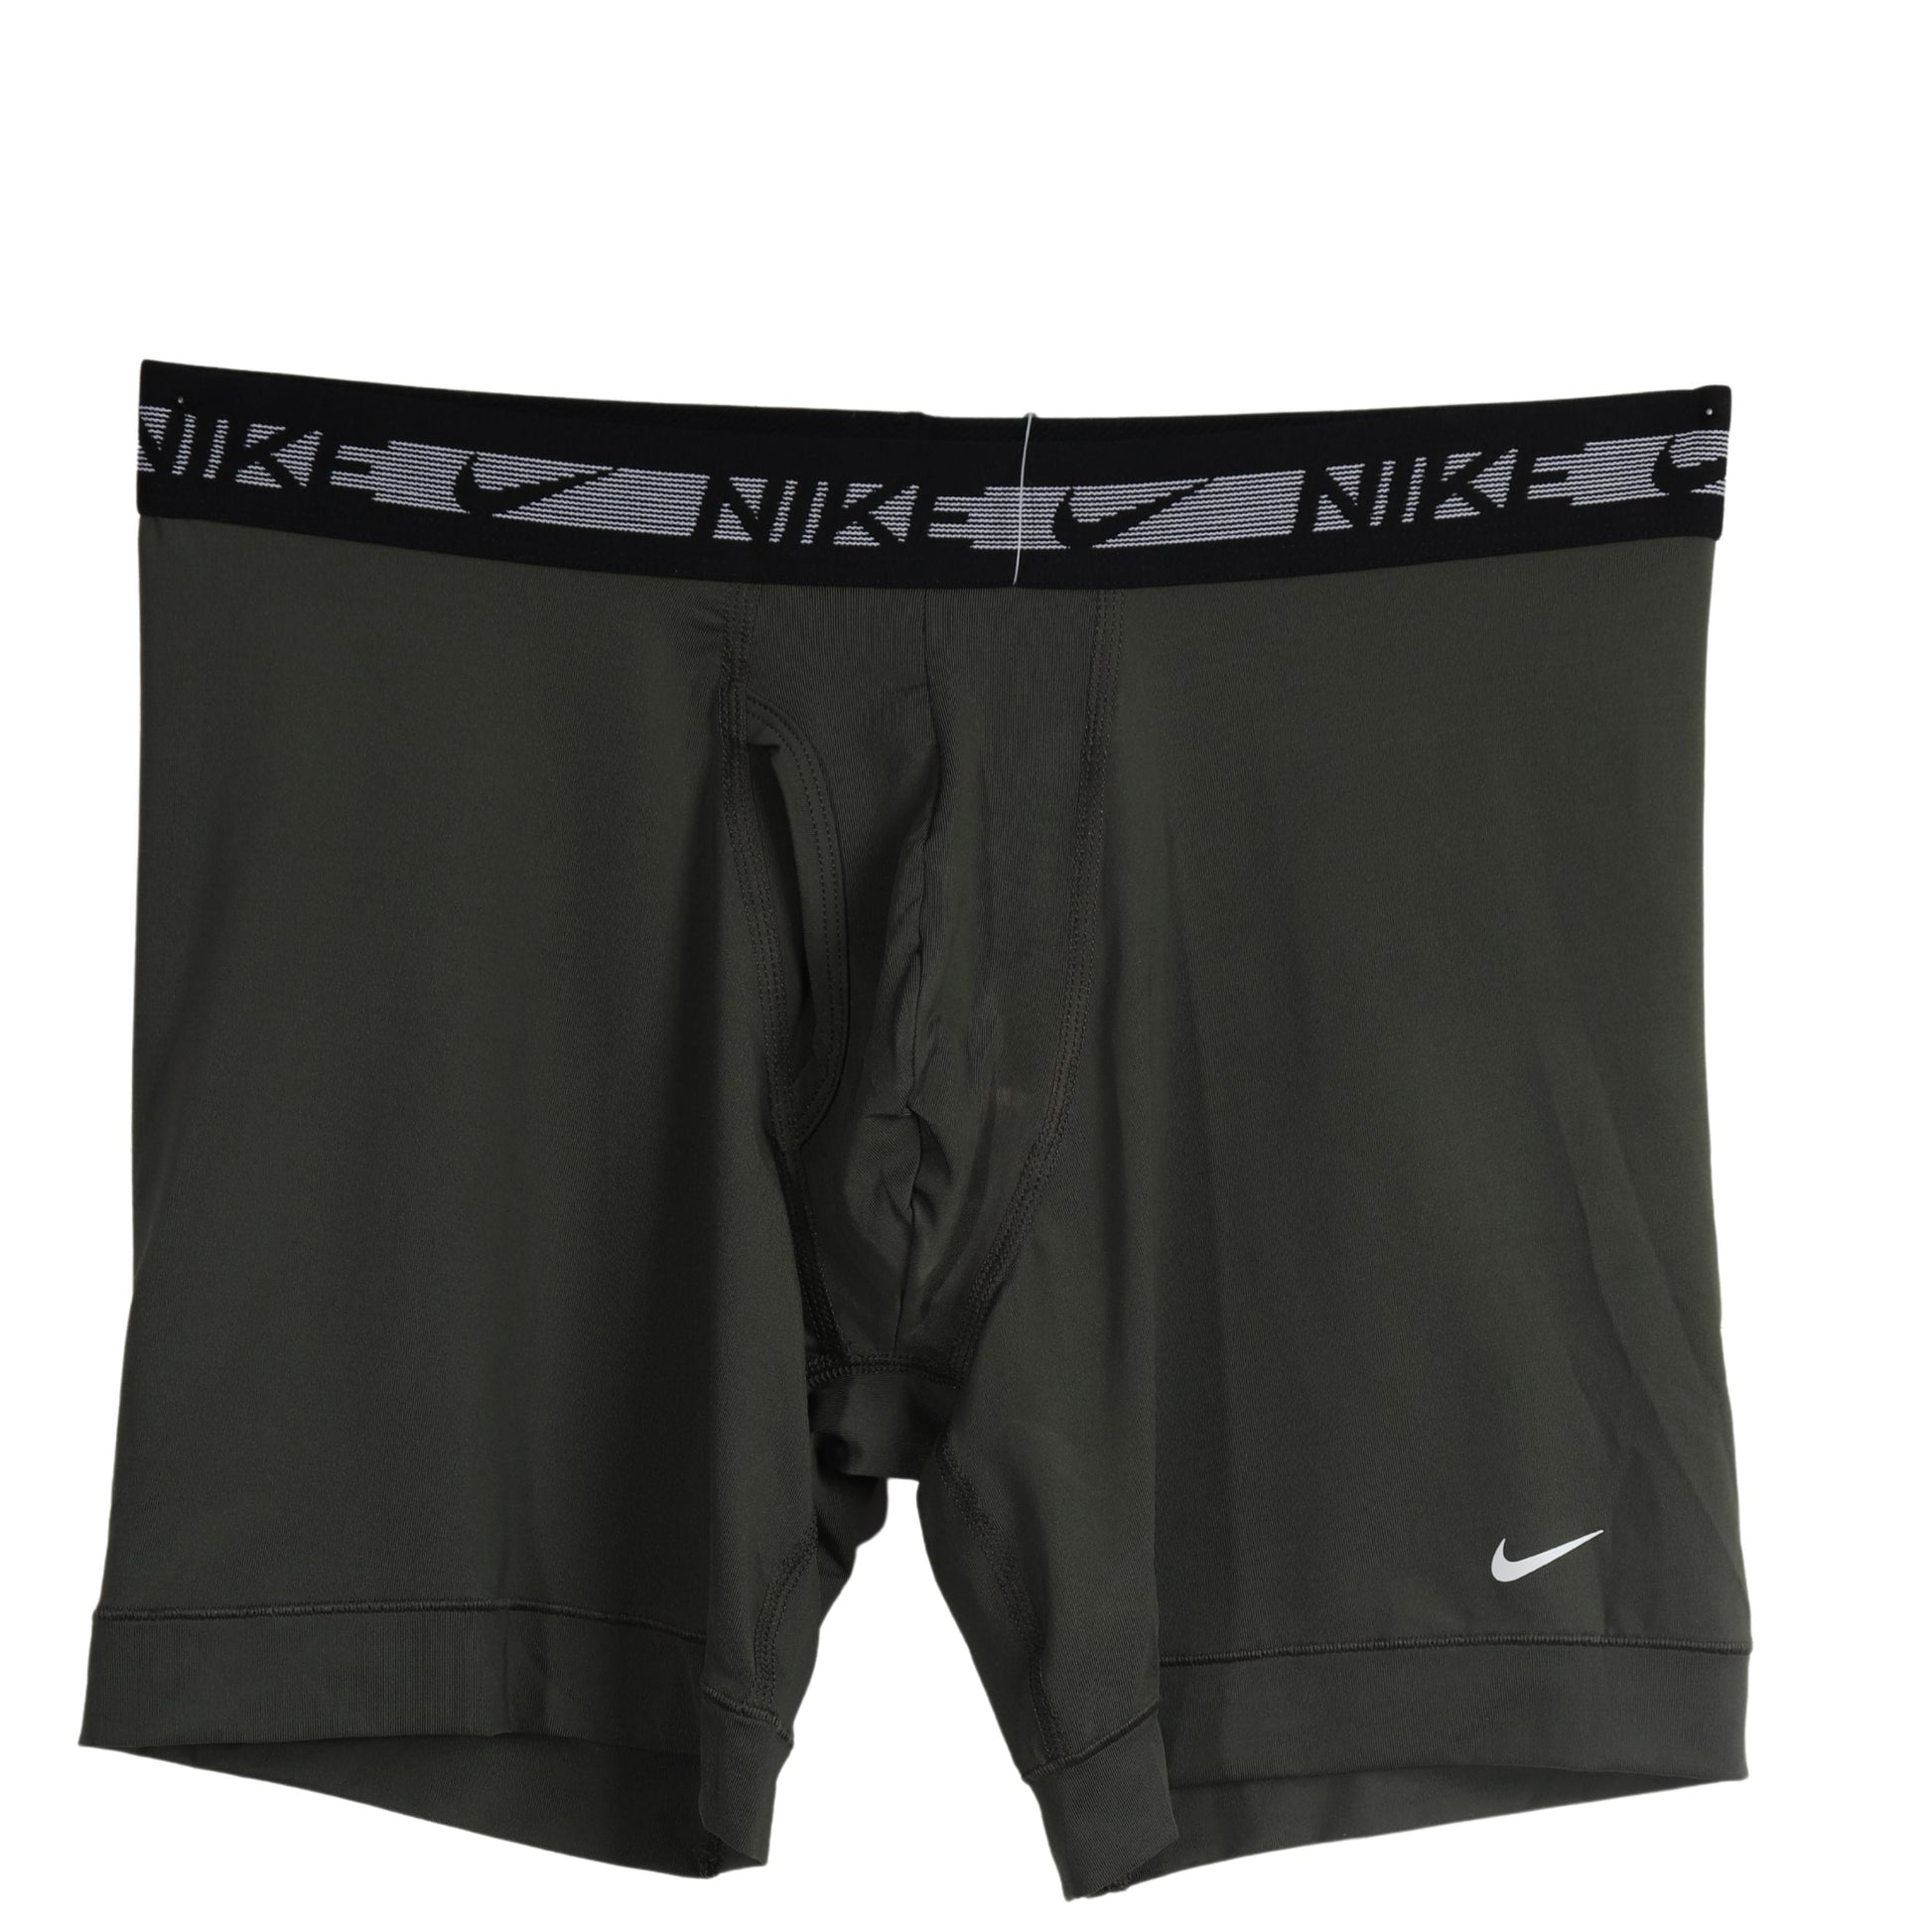 NIKE Mens Underwear M / Green NIKE - Dri - Fit